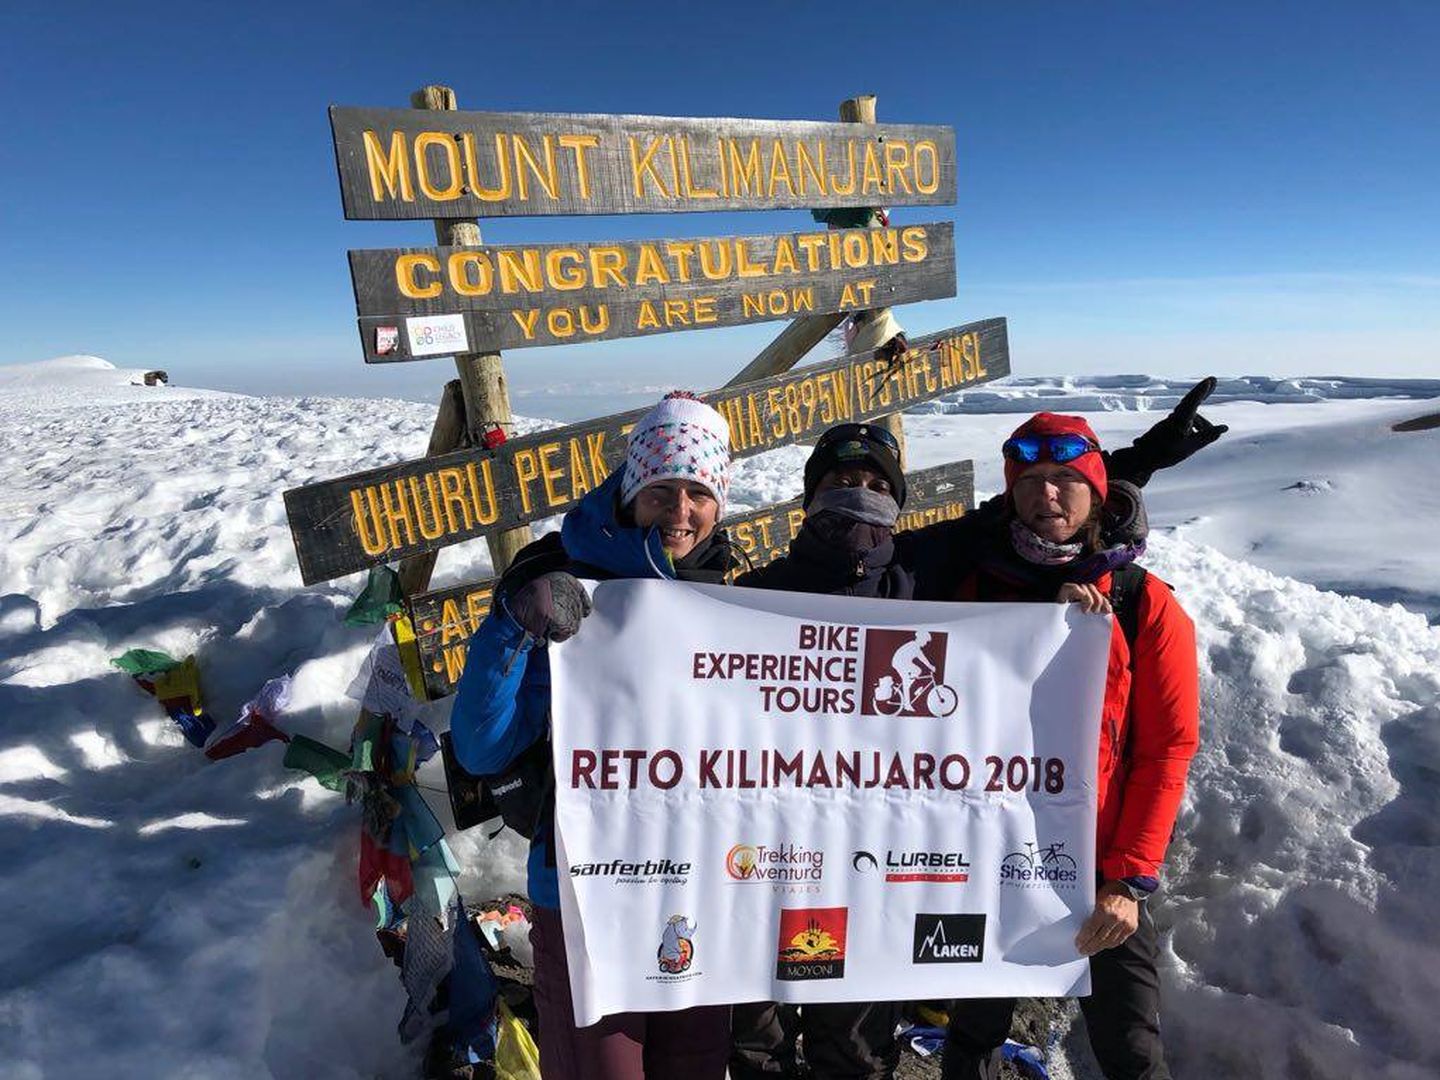 (Reto Kilimanjaro 2018)